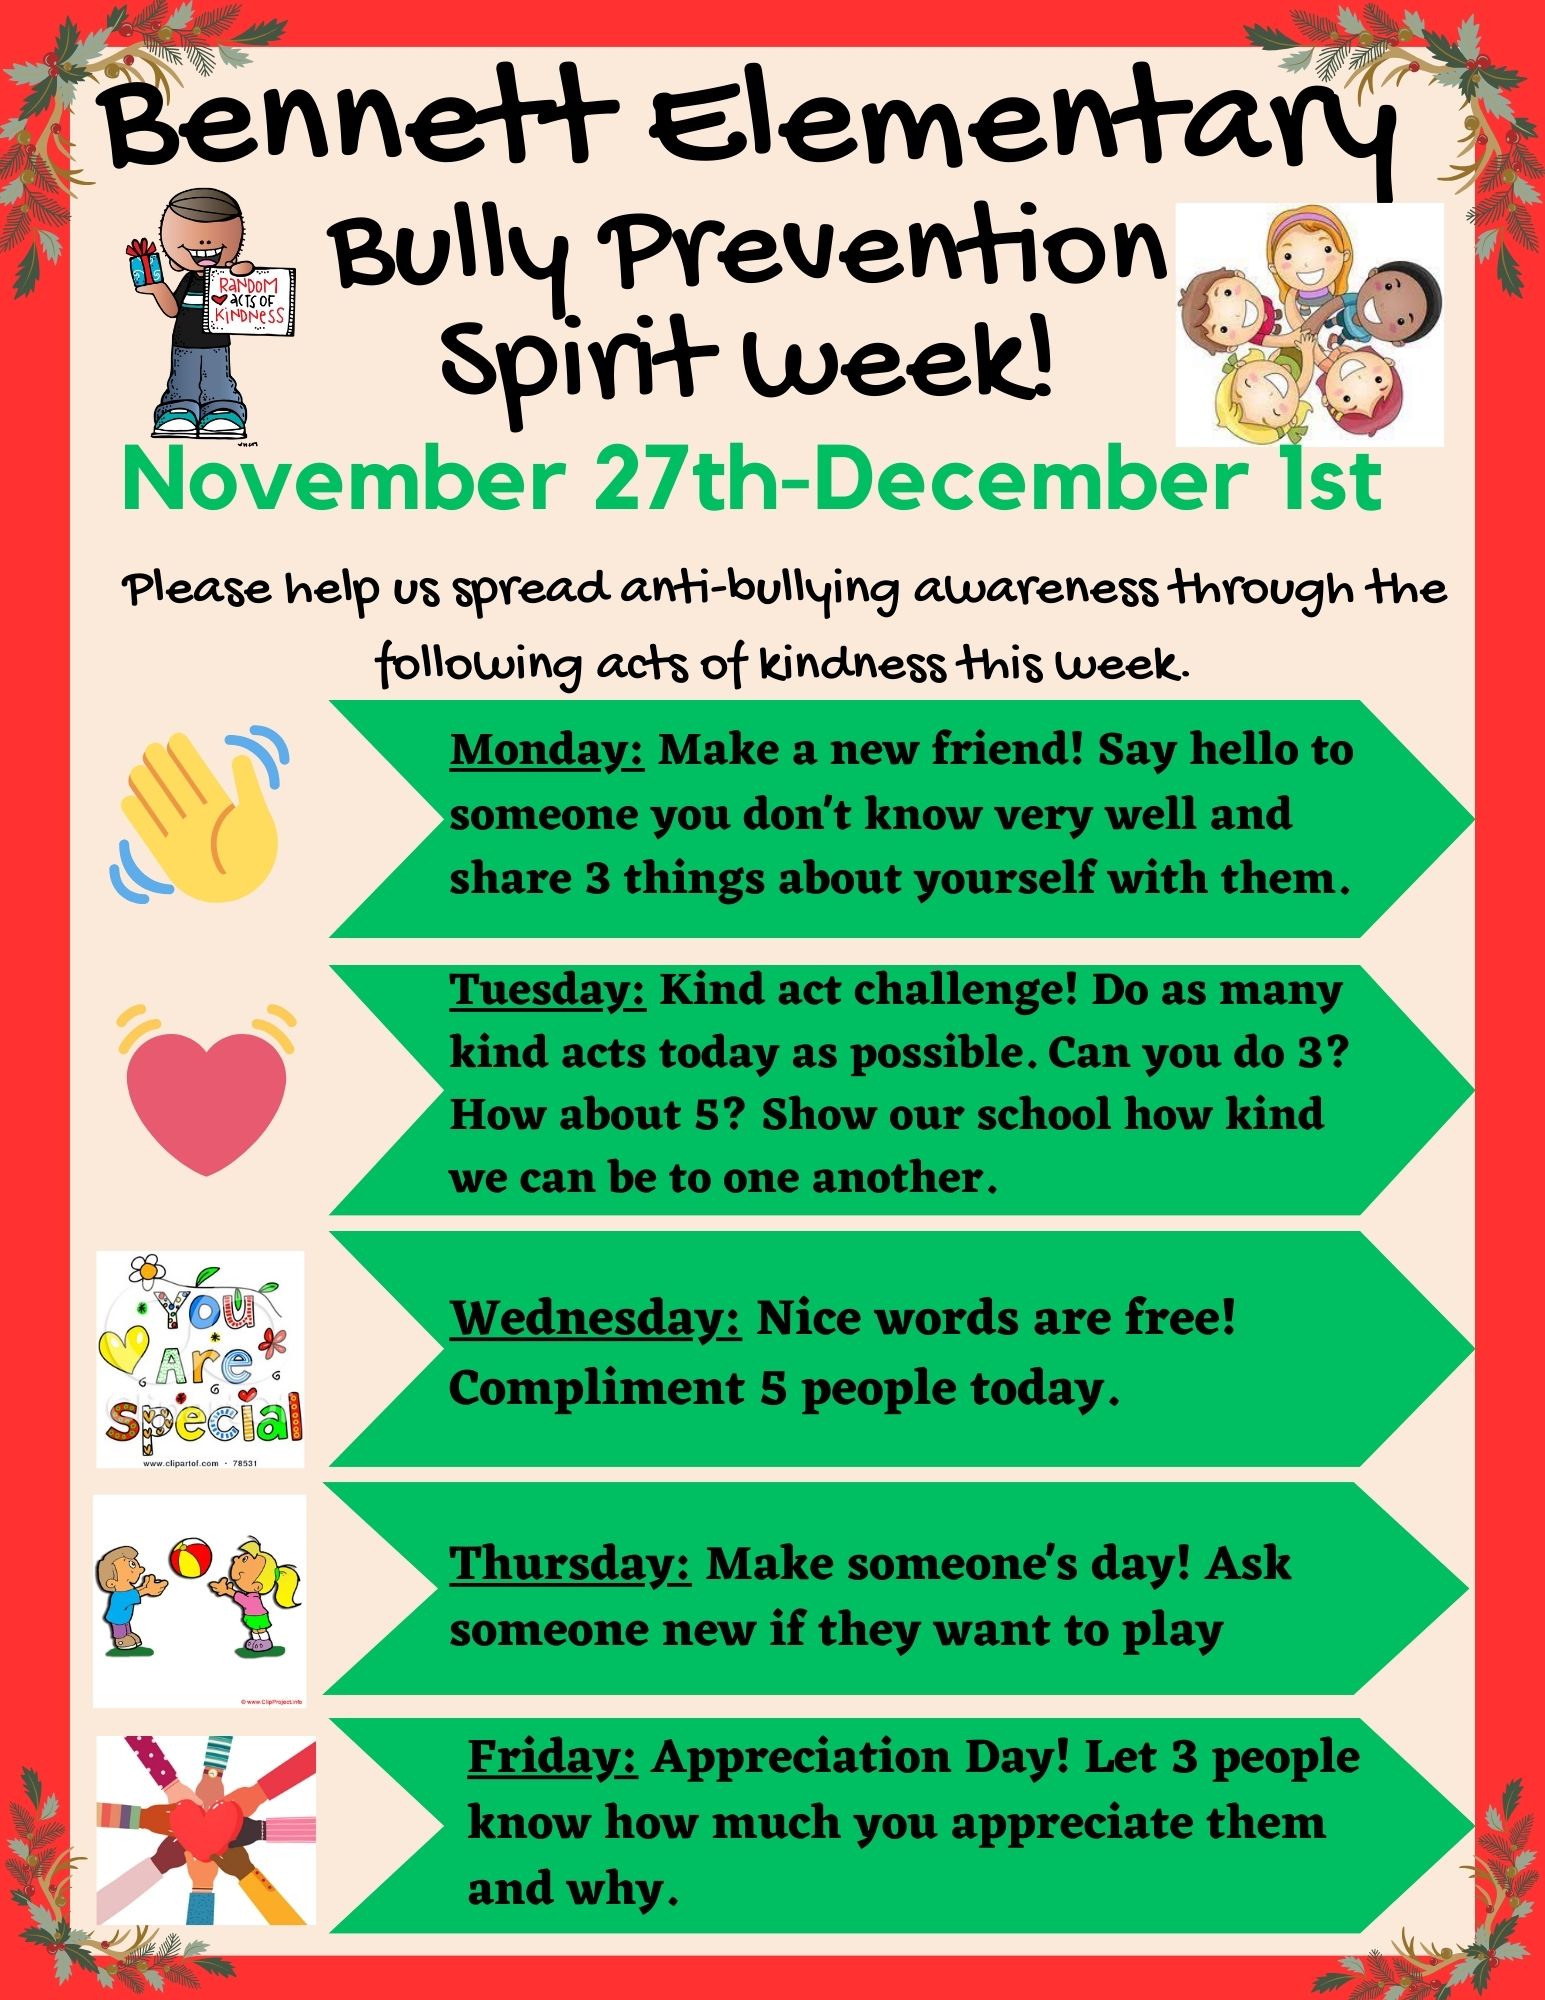 Bennett Elementary Bully Prevention Spirit Week 2023 Flier (text above)